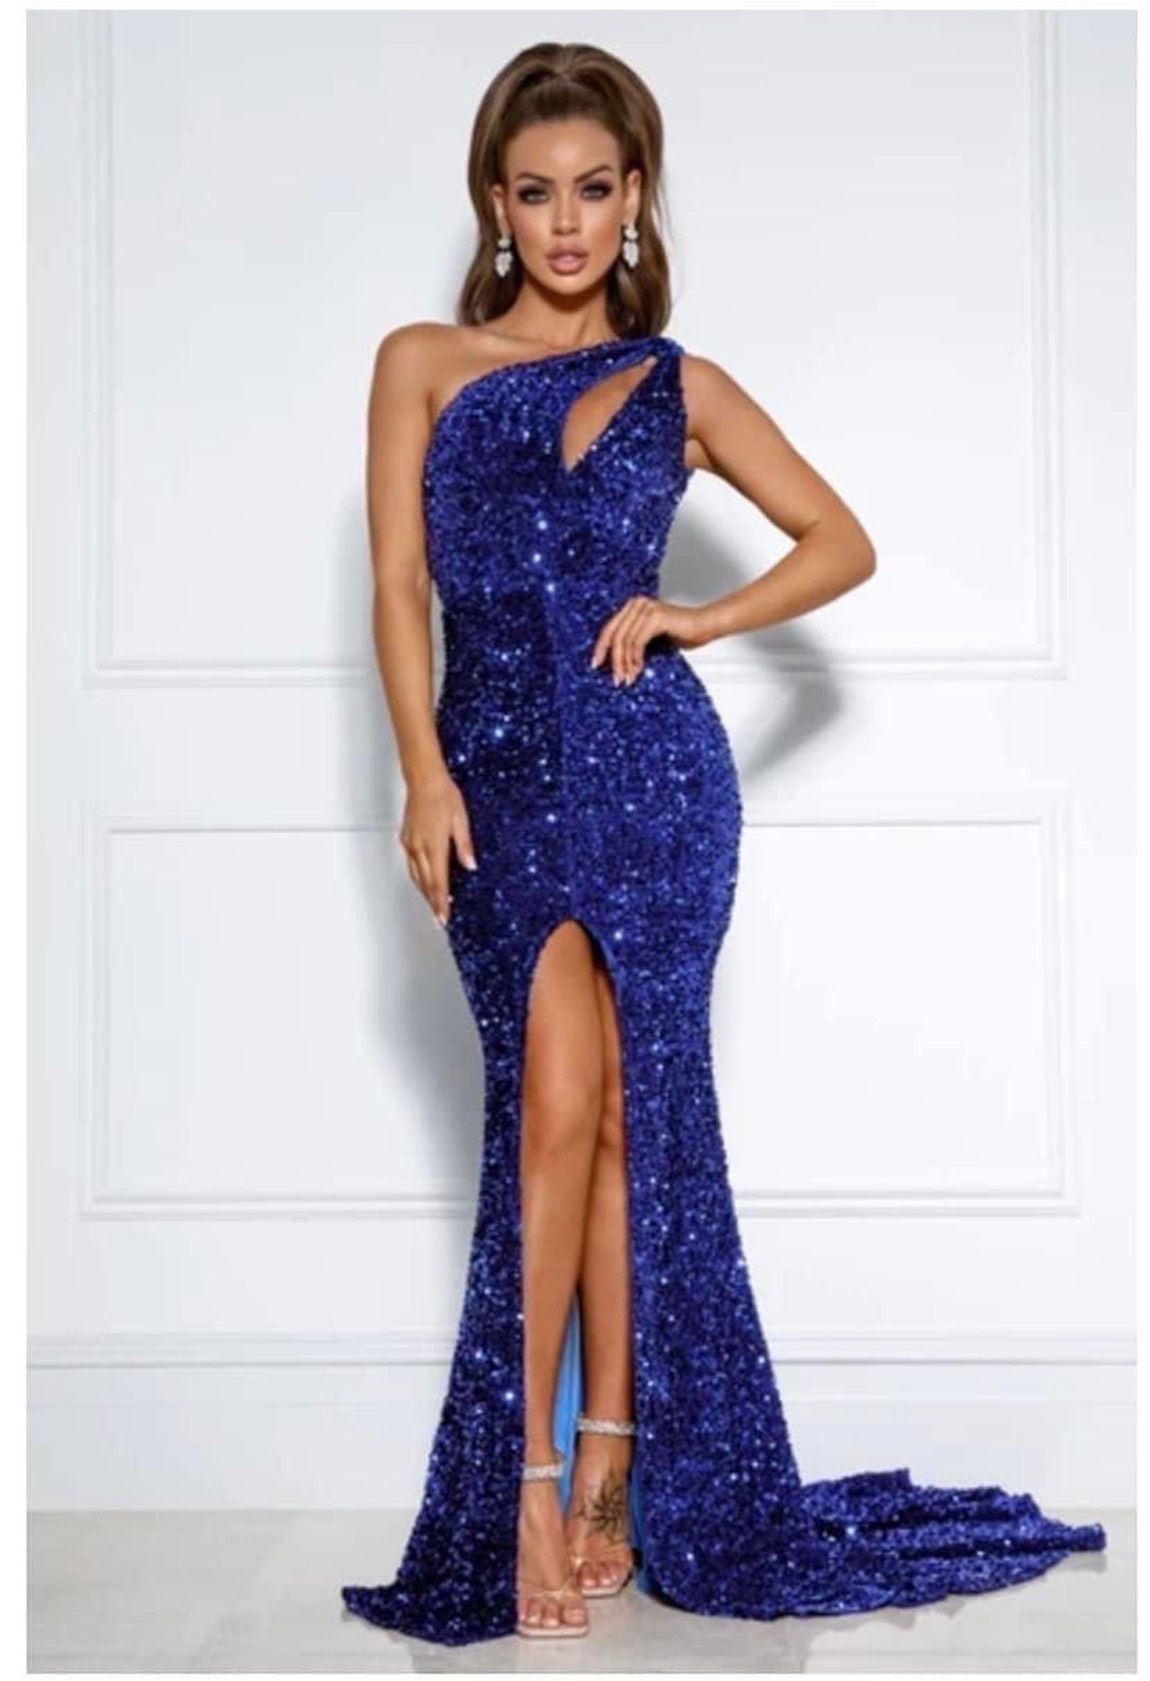 Size 4 Prom One Shoulder Sequined Royal Blue Side Slit Dress on Queenly